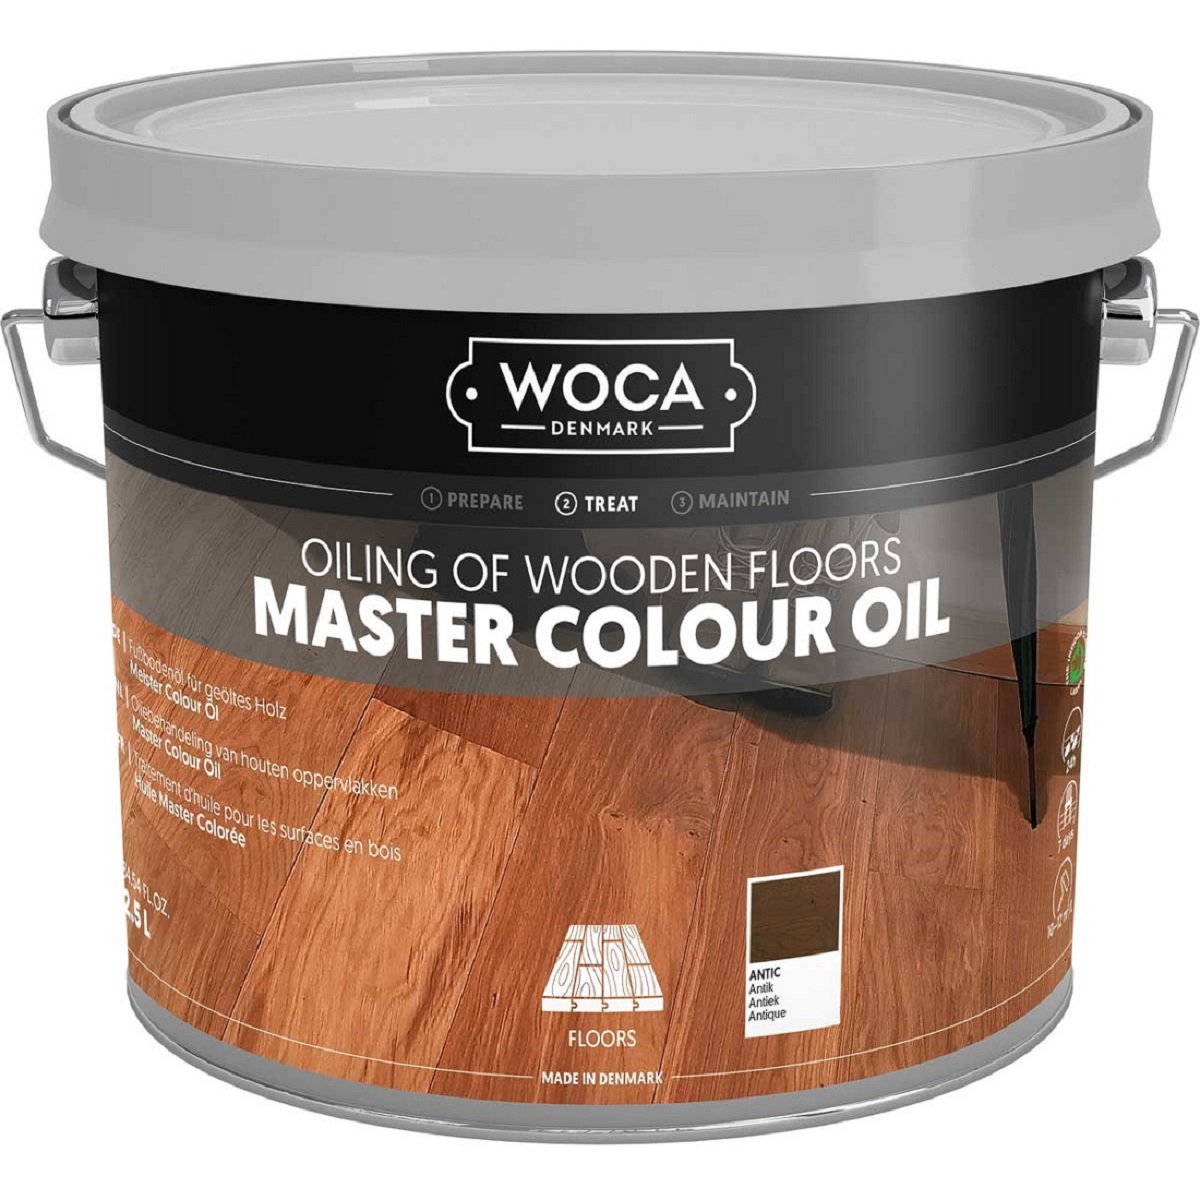 WOCA Parkett-Colouröl Antik N349 Master Colour Oil Antique 2,5 Liter